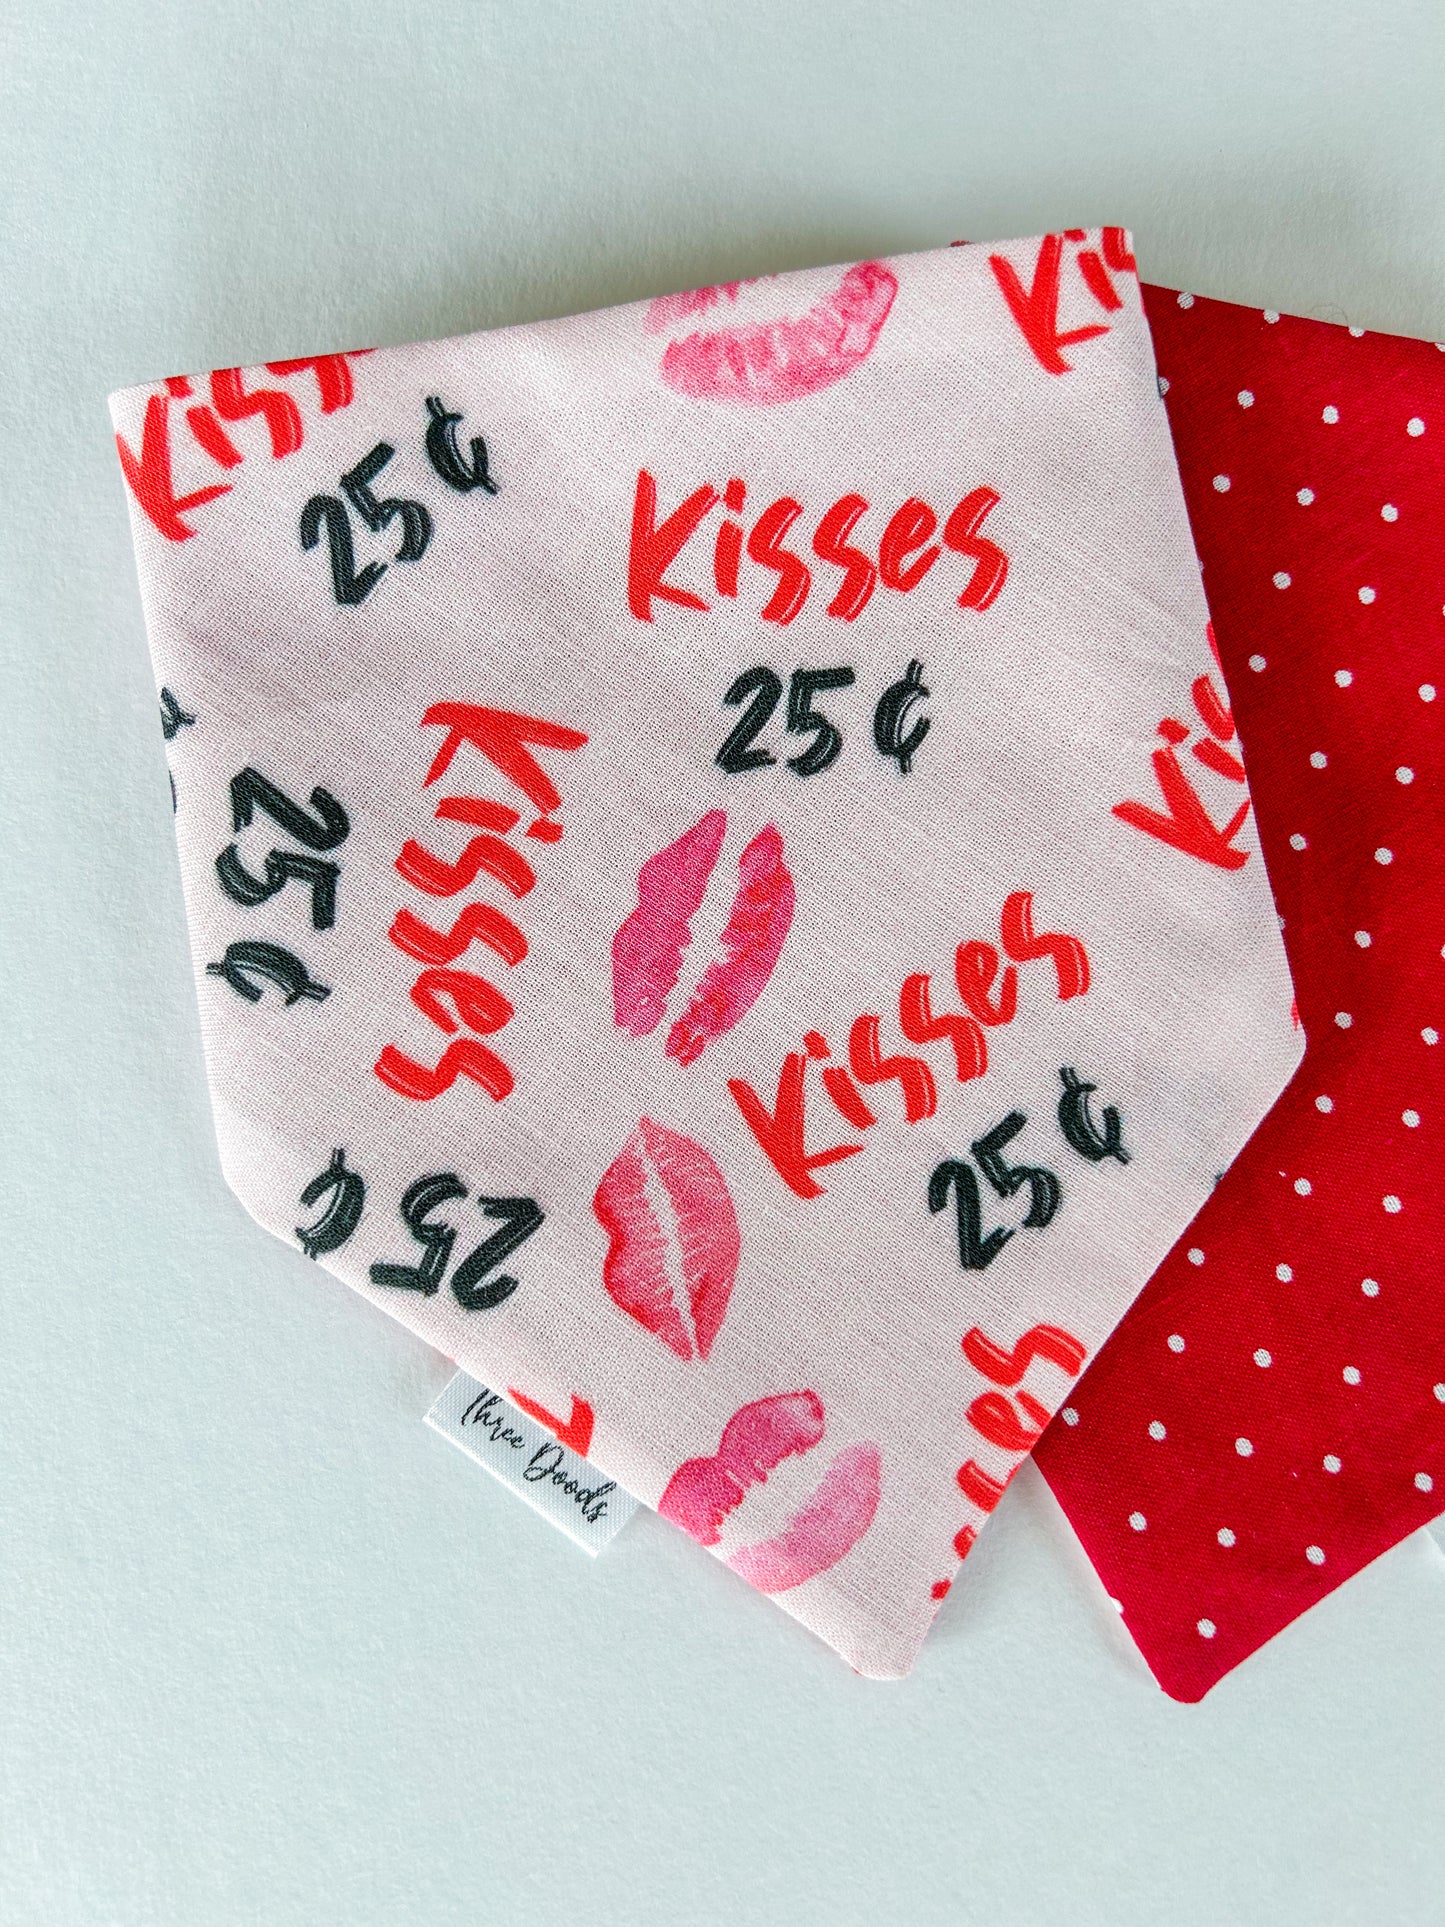 25 cent kisses